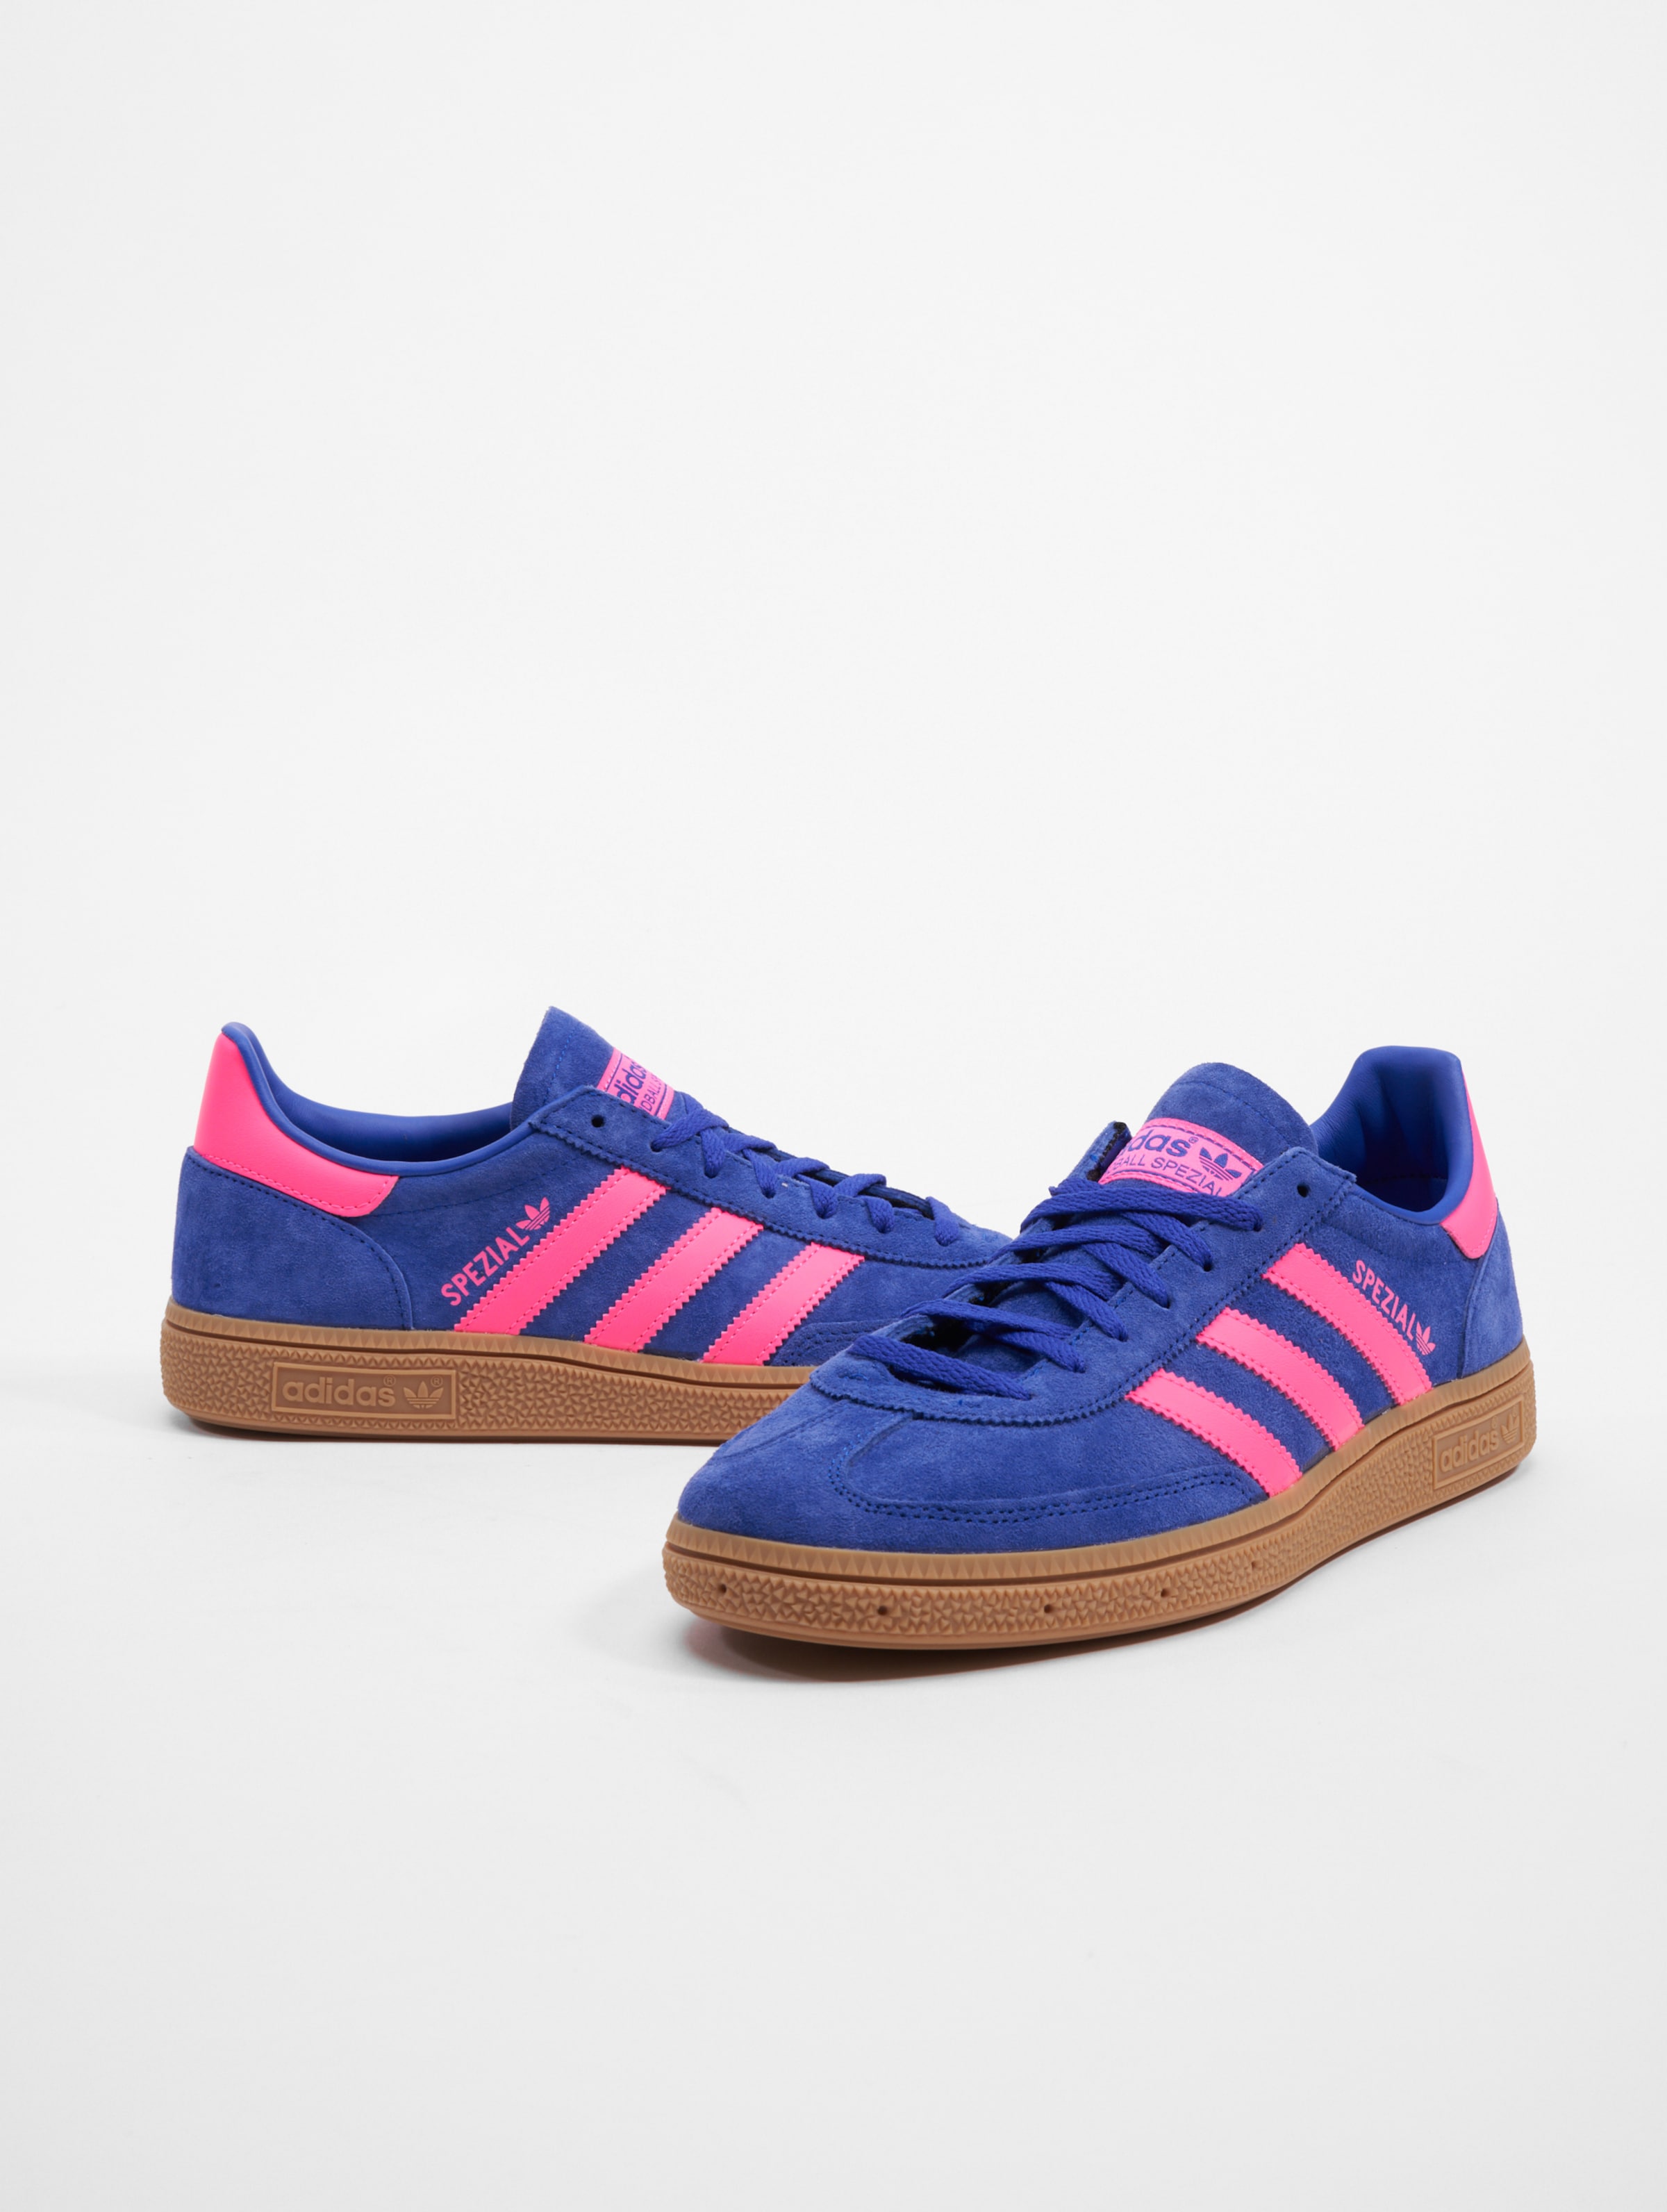 adidas Originals Handball Spezial Sneakers Frauen,Männer,Unisex op kleur blauw, Maat 38 2/3